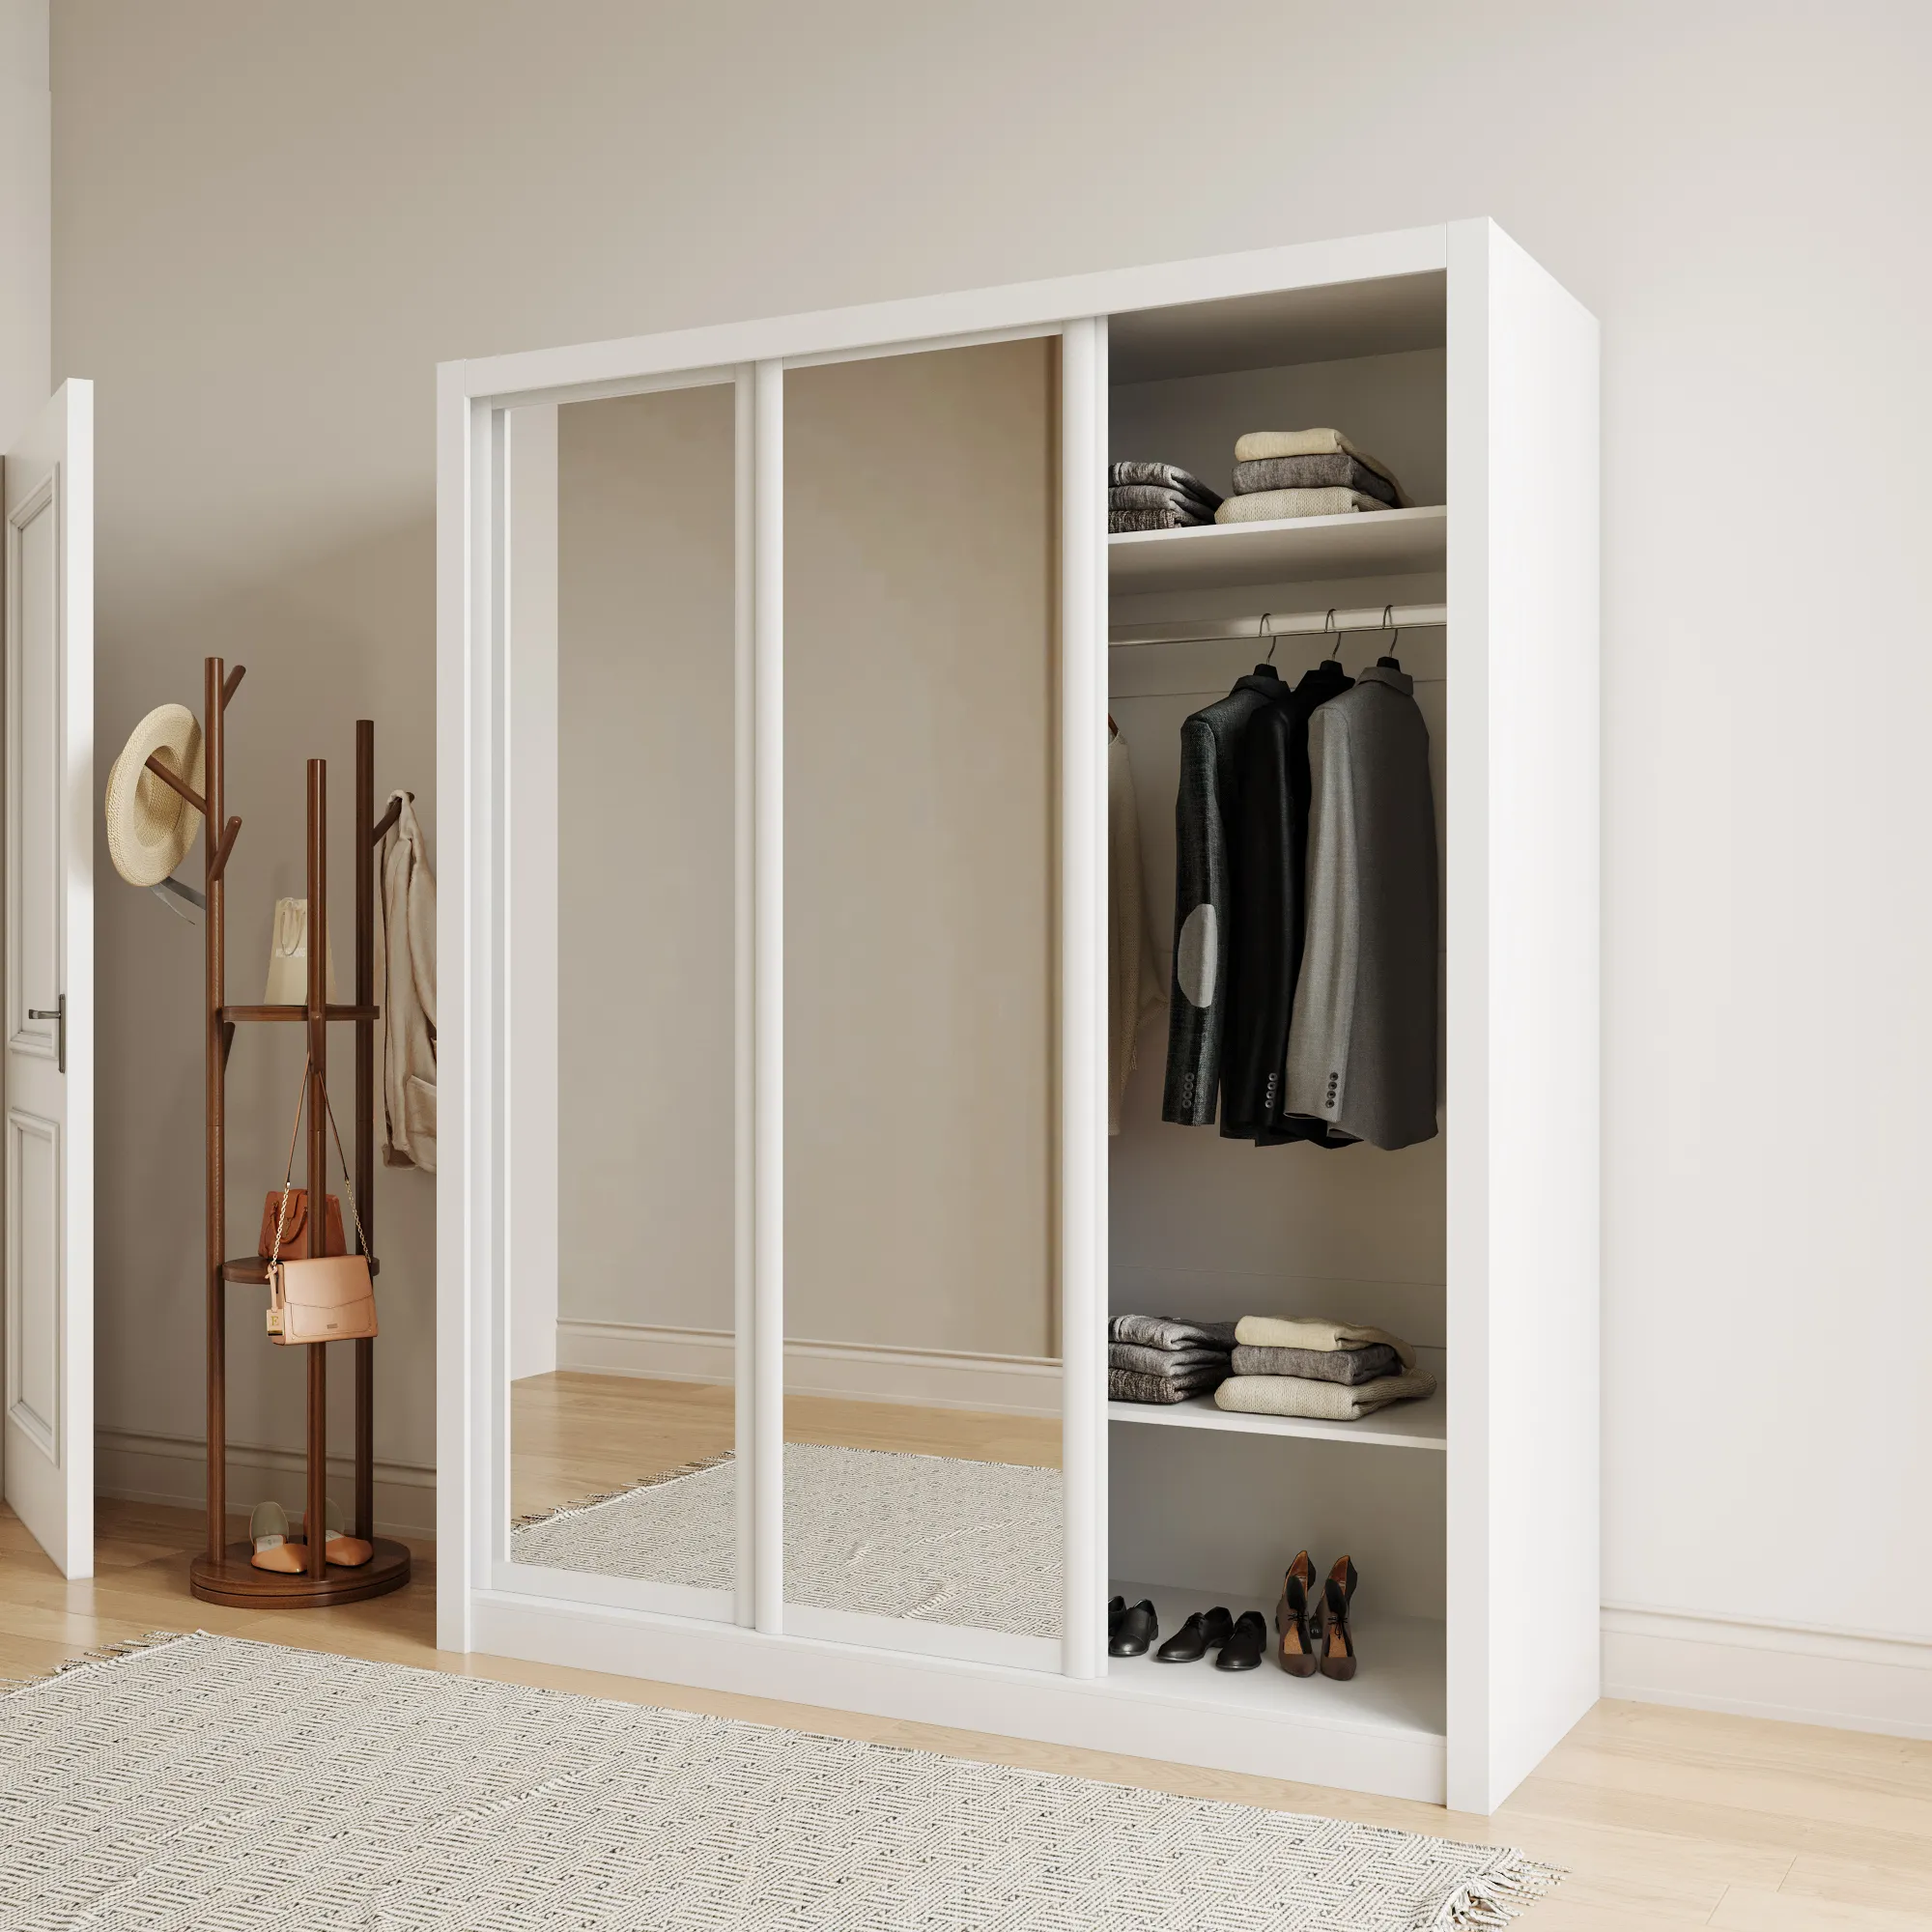 Design moderno uv alta superficie di vetro 2 porte a buon mercato armadio con specchio guardaroba vestiti organizzare camera da letto mobili